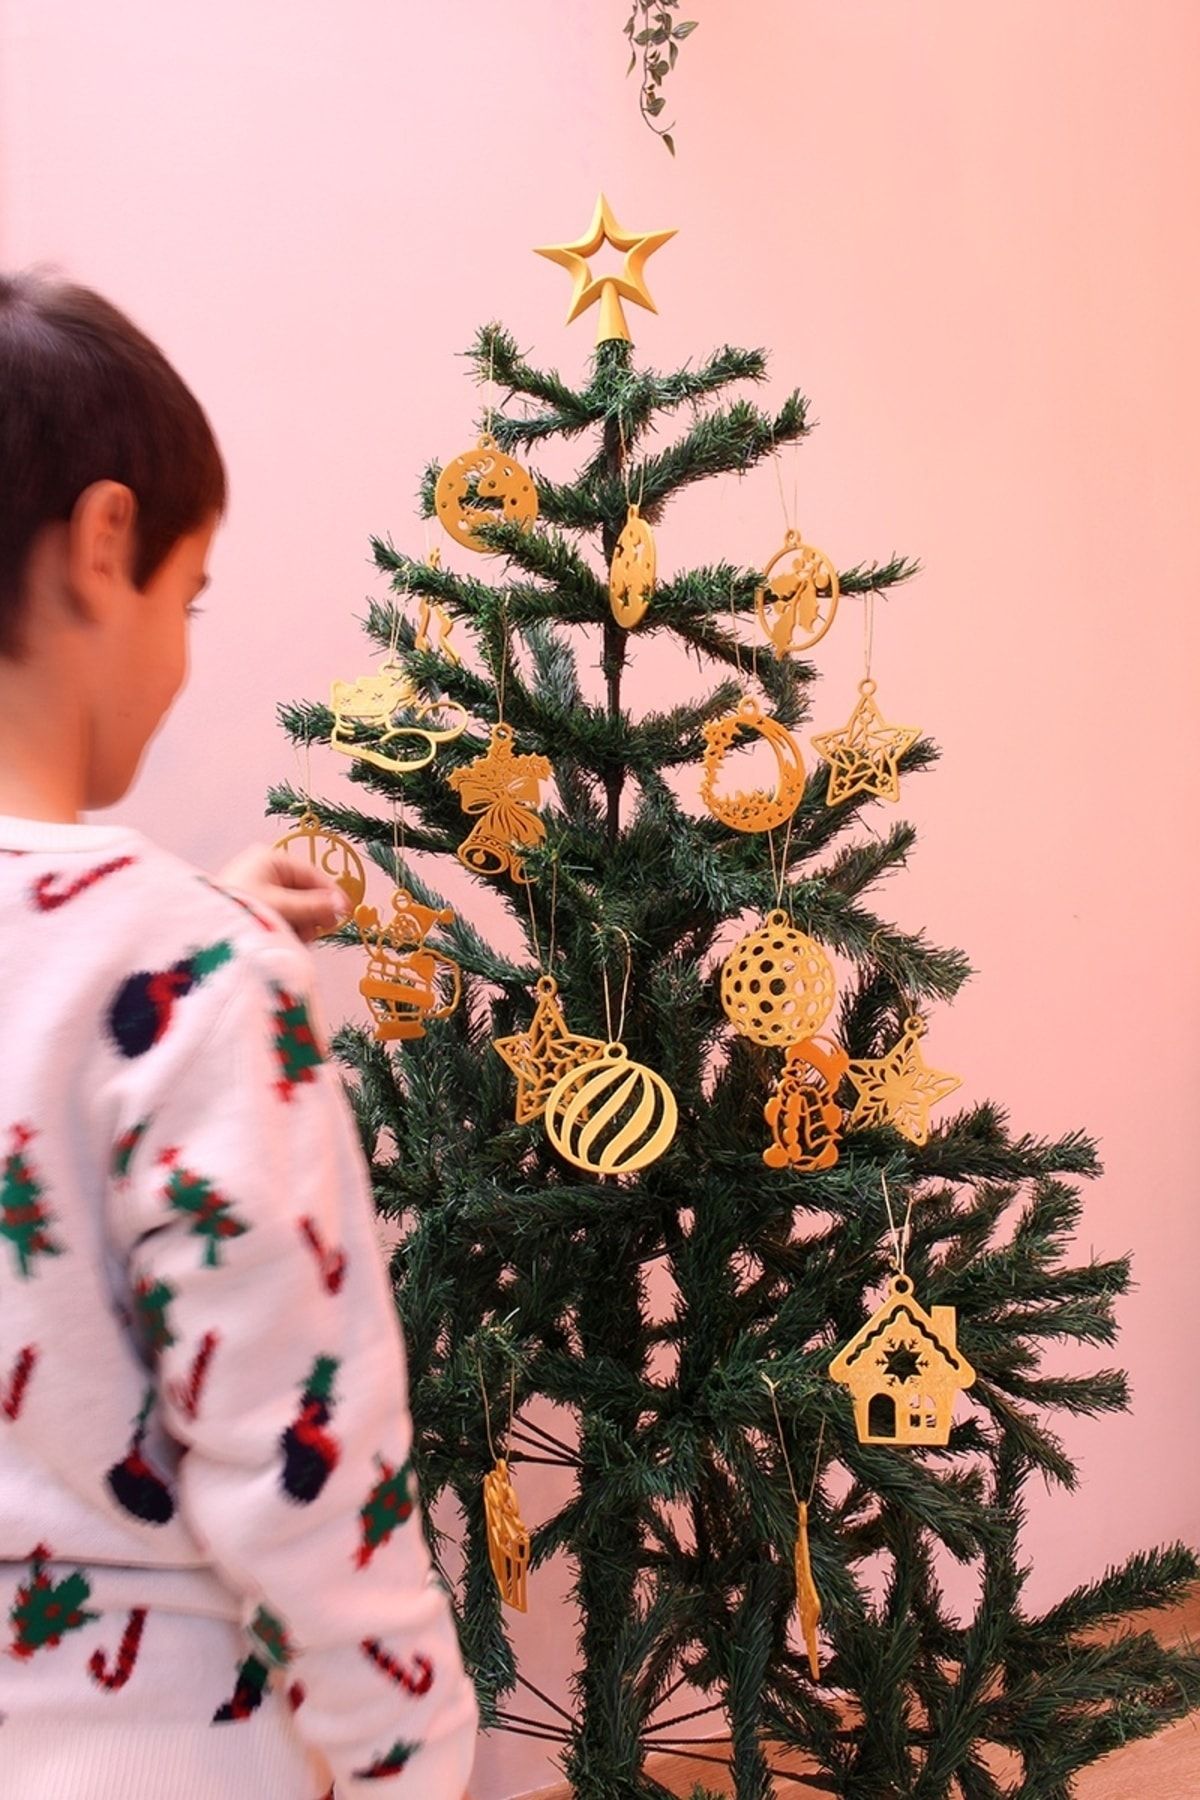 Maflen Yılbaşı Yeni Yıl Noel Çam Ağacı Süsü Ve Tepe Süsü Yıldız 25'li Set Altın Rengi